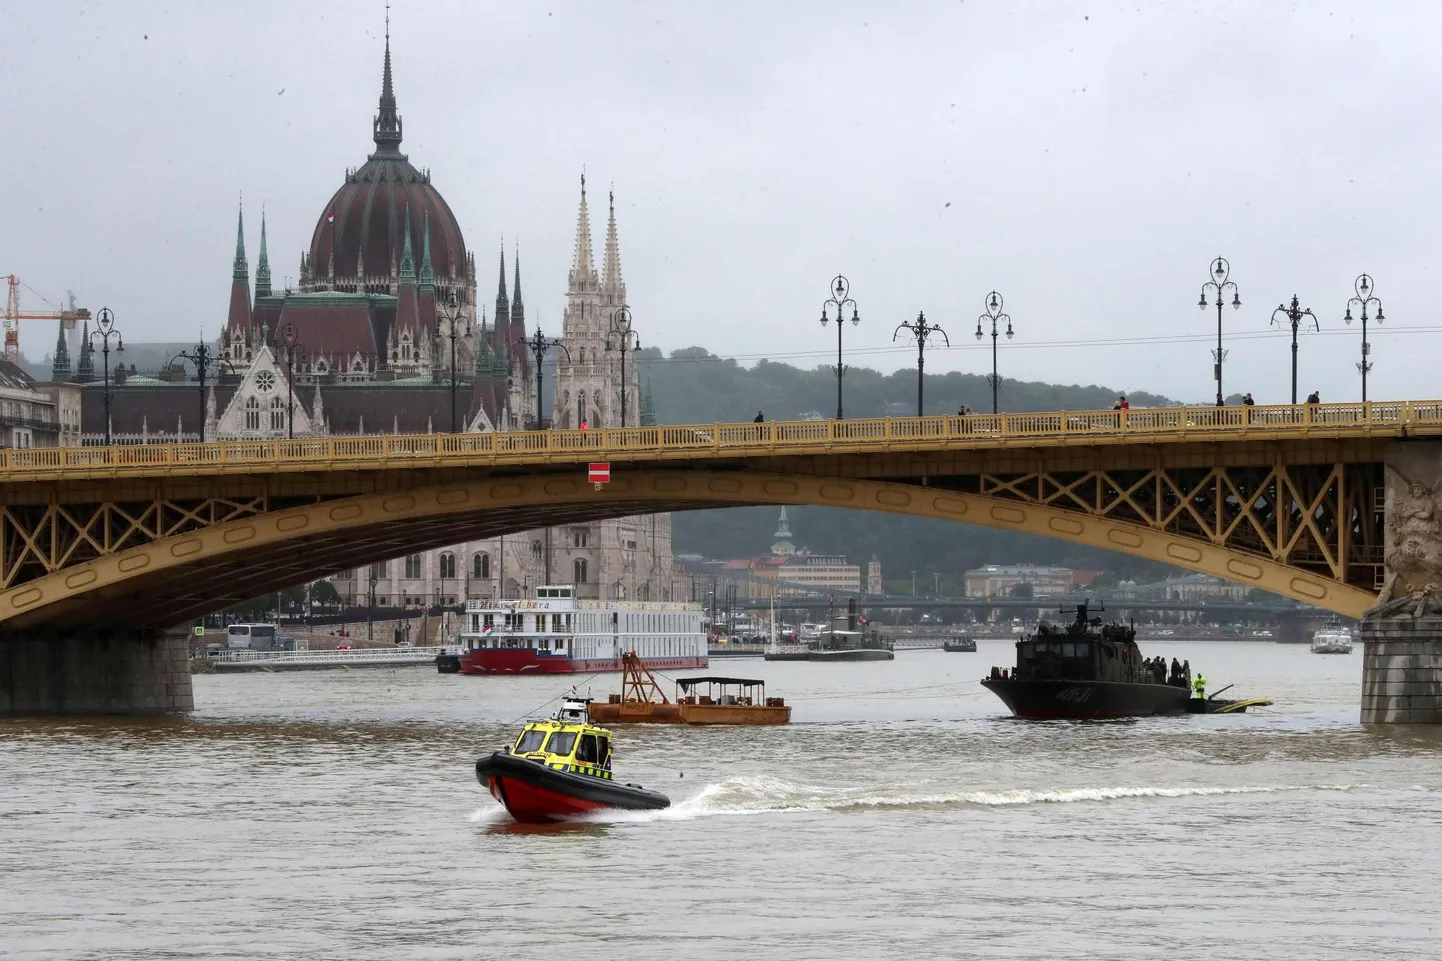 Õnnetus leidis aset Budapesti ühe tuntuima vaatamisväärsuse, Ungari parlamendihoone lähedal.